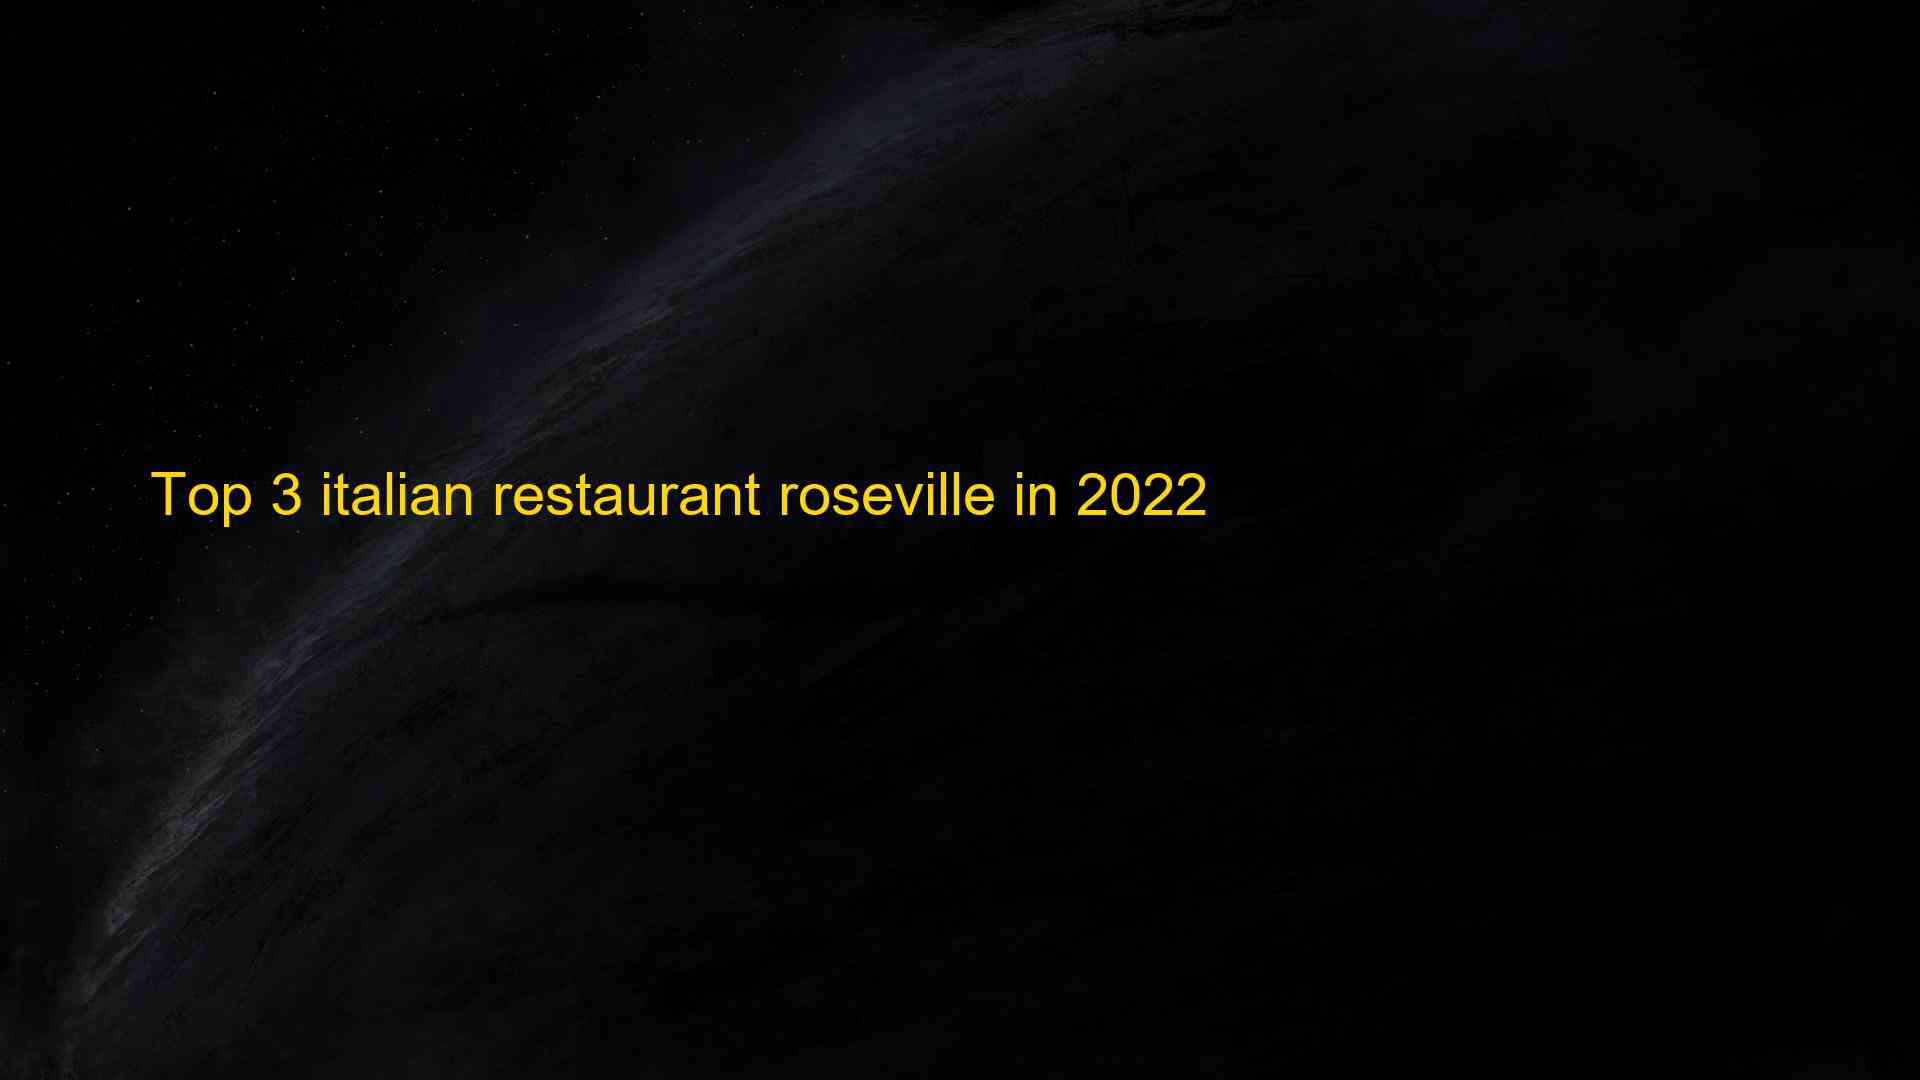 Top 3 italian restaurant roseville in 2022 1663181777